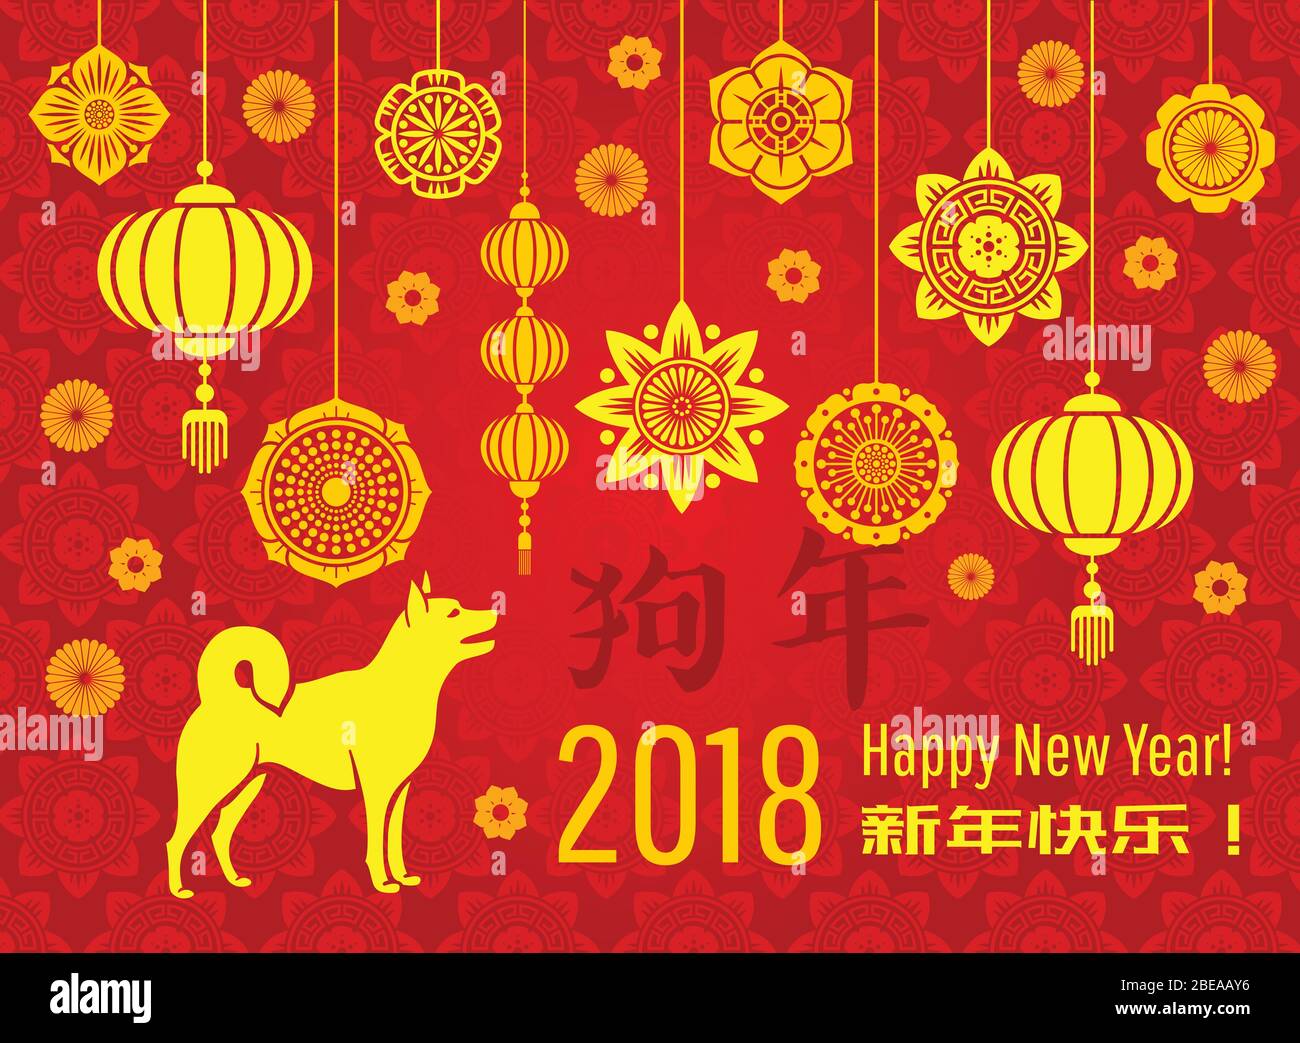 Chinesische Neujahrs 2018 Tapete mit asiatischen Laternen und dekorativen Elementen. Hund Jahr Vektor Grußkarte. Illustration der Jahreskarte Feier Stock Vektor